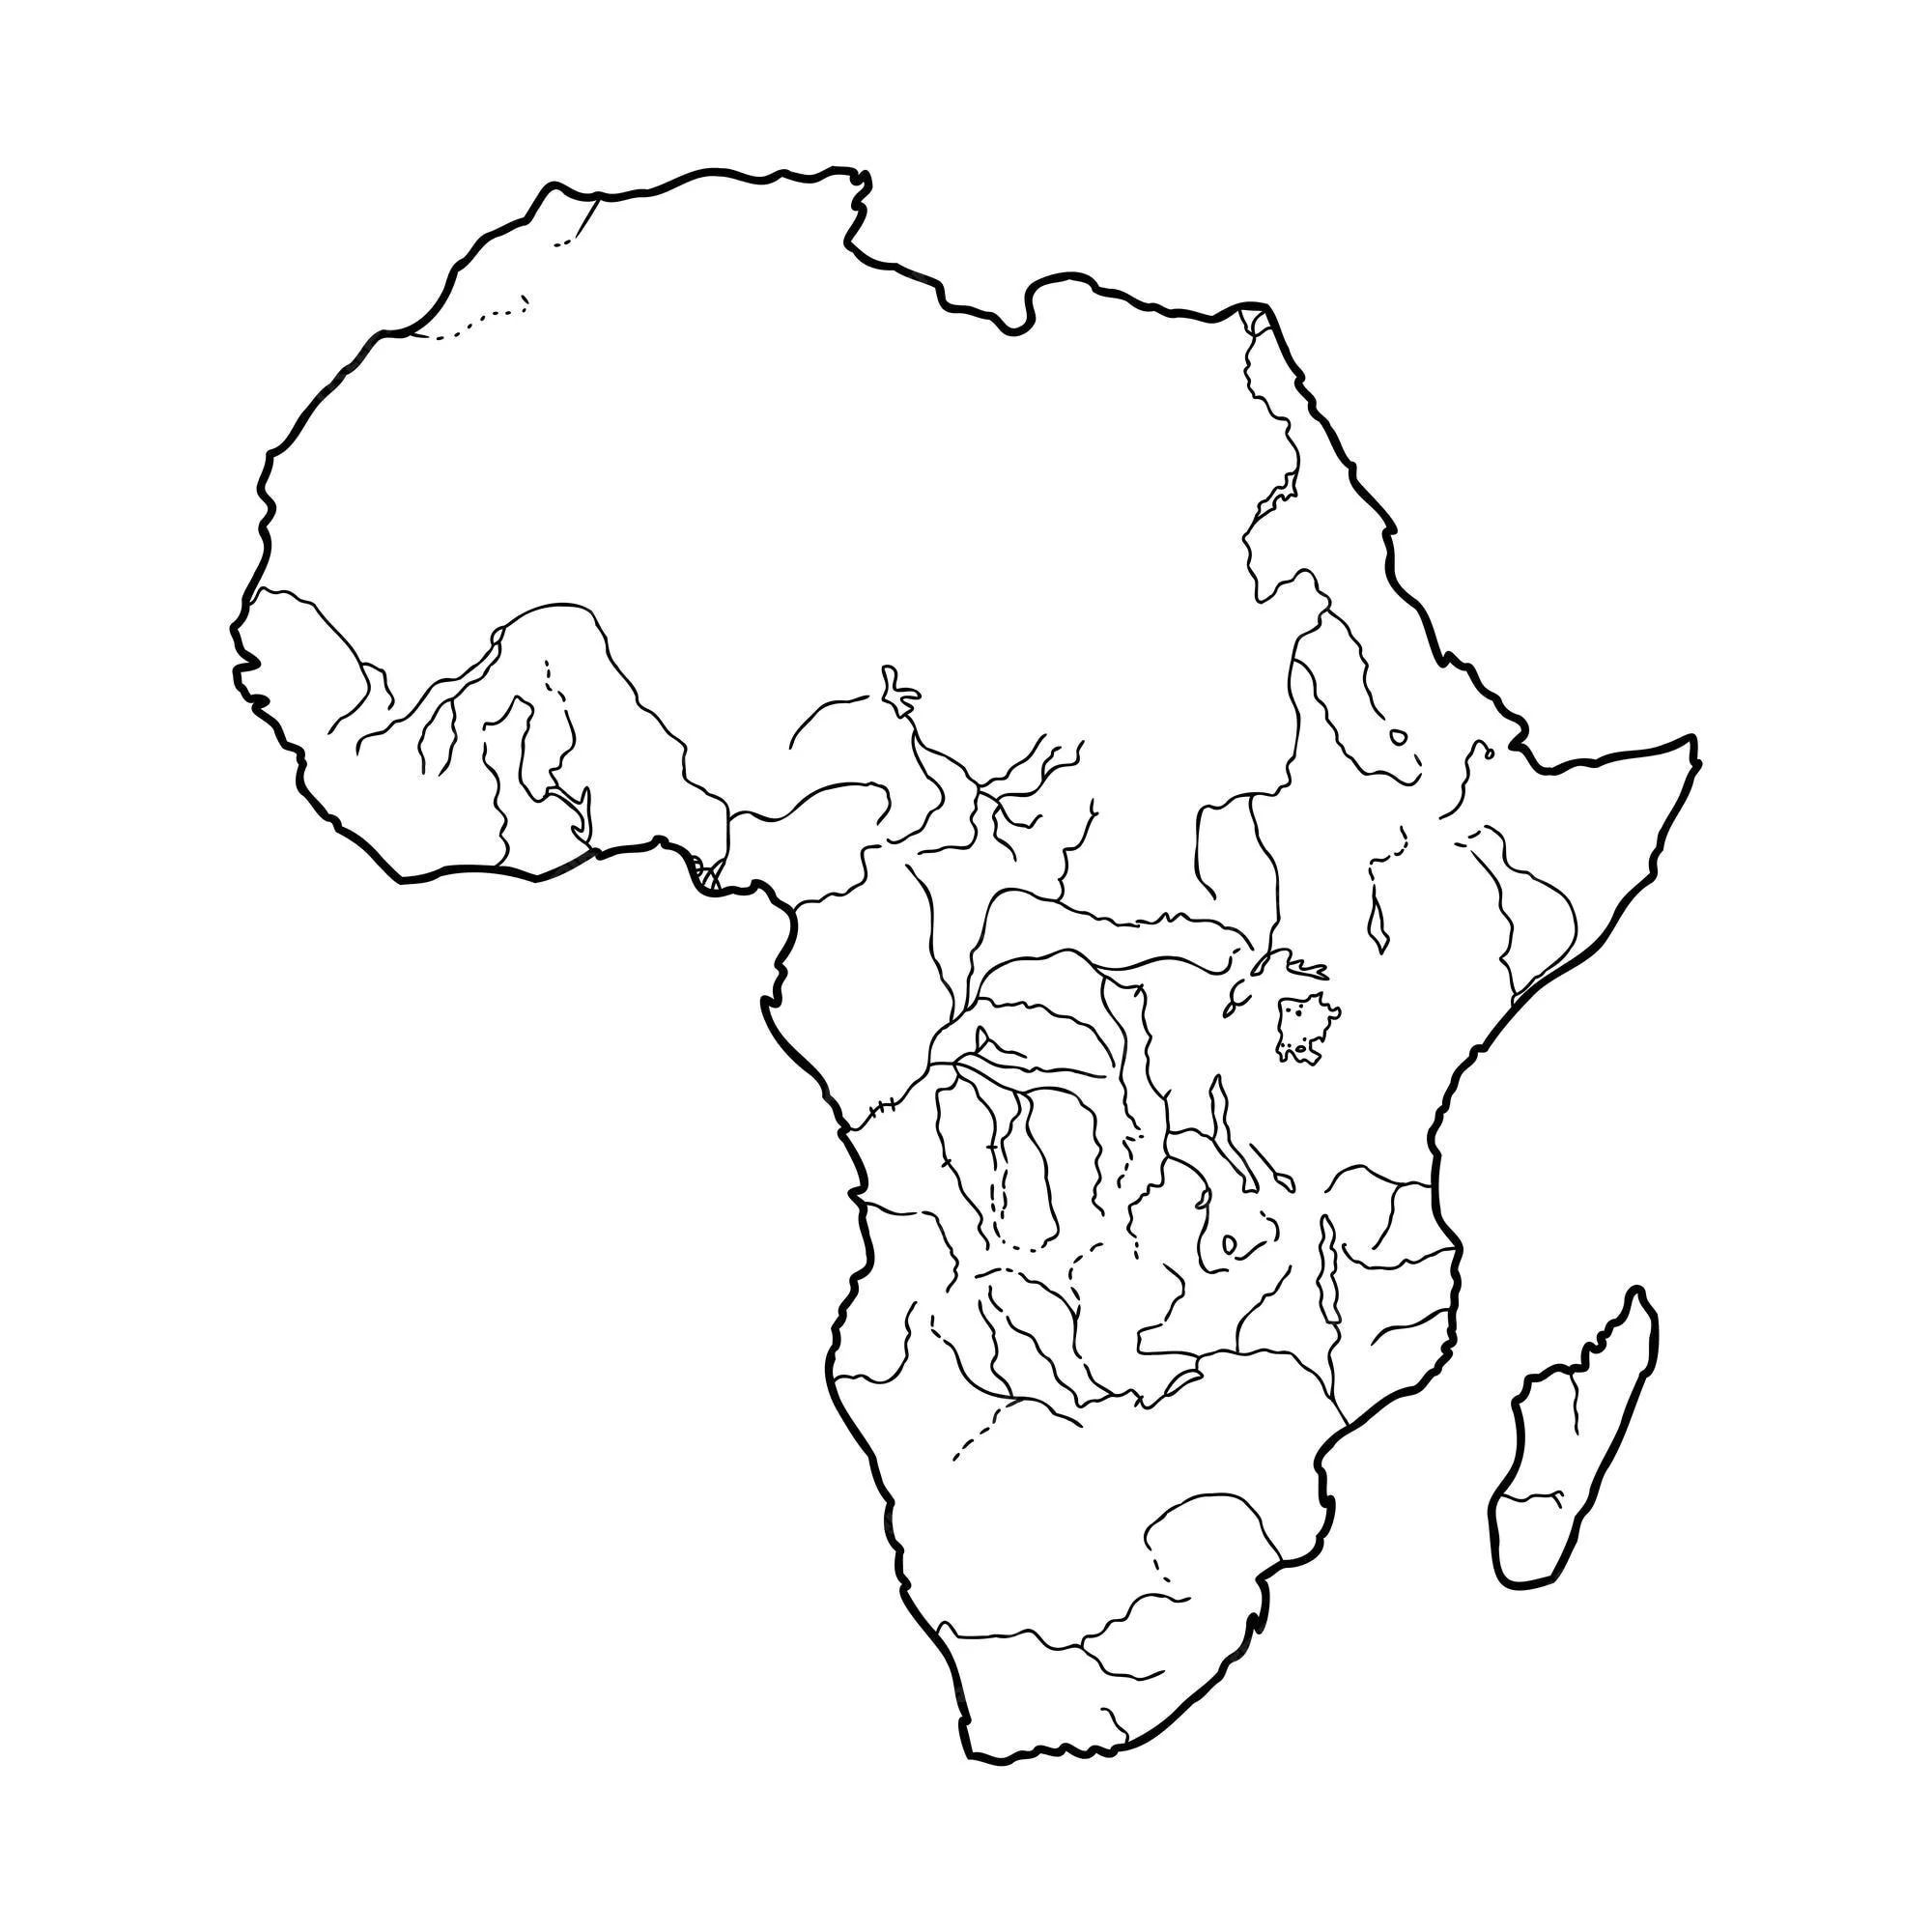 Africa mappa muta grafica disegno a mano libera su sfondo bianco  illustrazione vettoriale | Vettore Premium